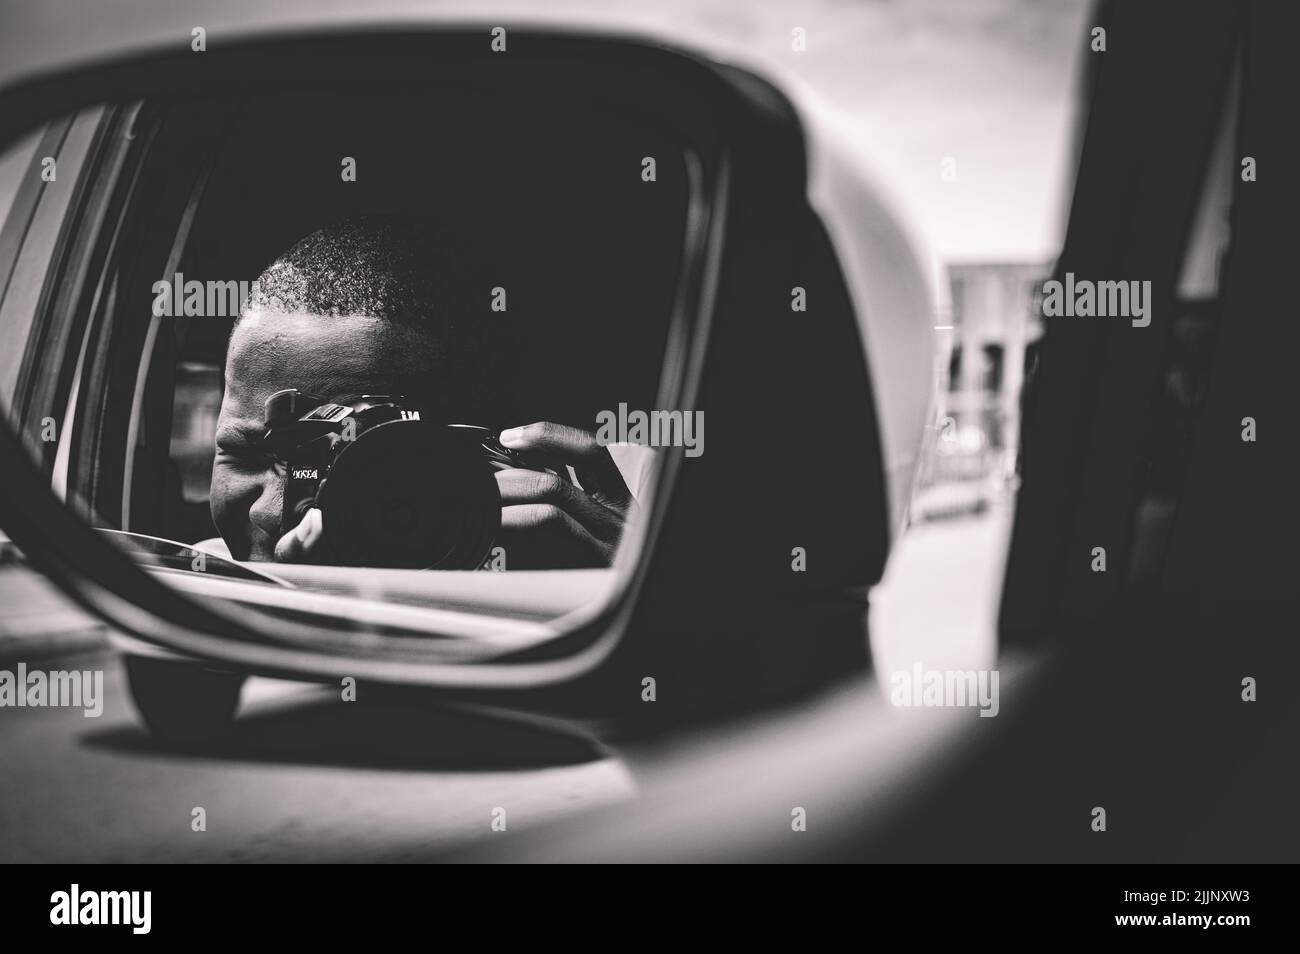 Scatto in scala di grigi dell'autoritratto di un fotografo sul riflesso dello specchio laterale di un'auto Foto Stock